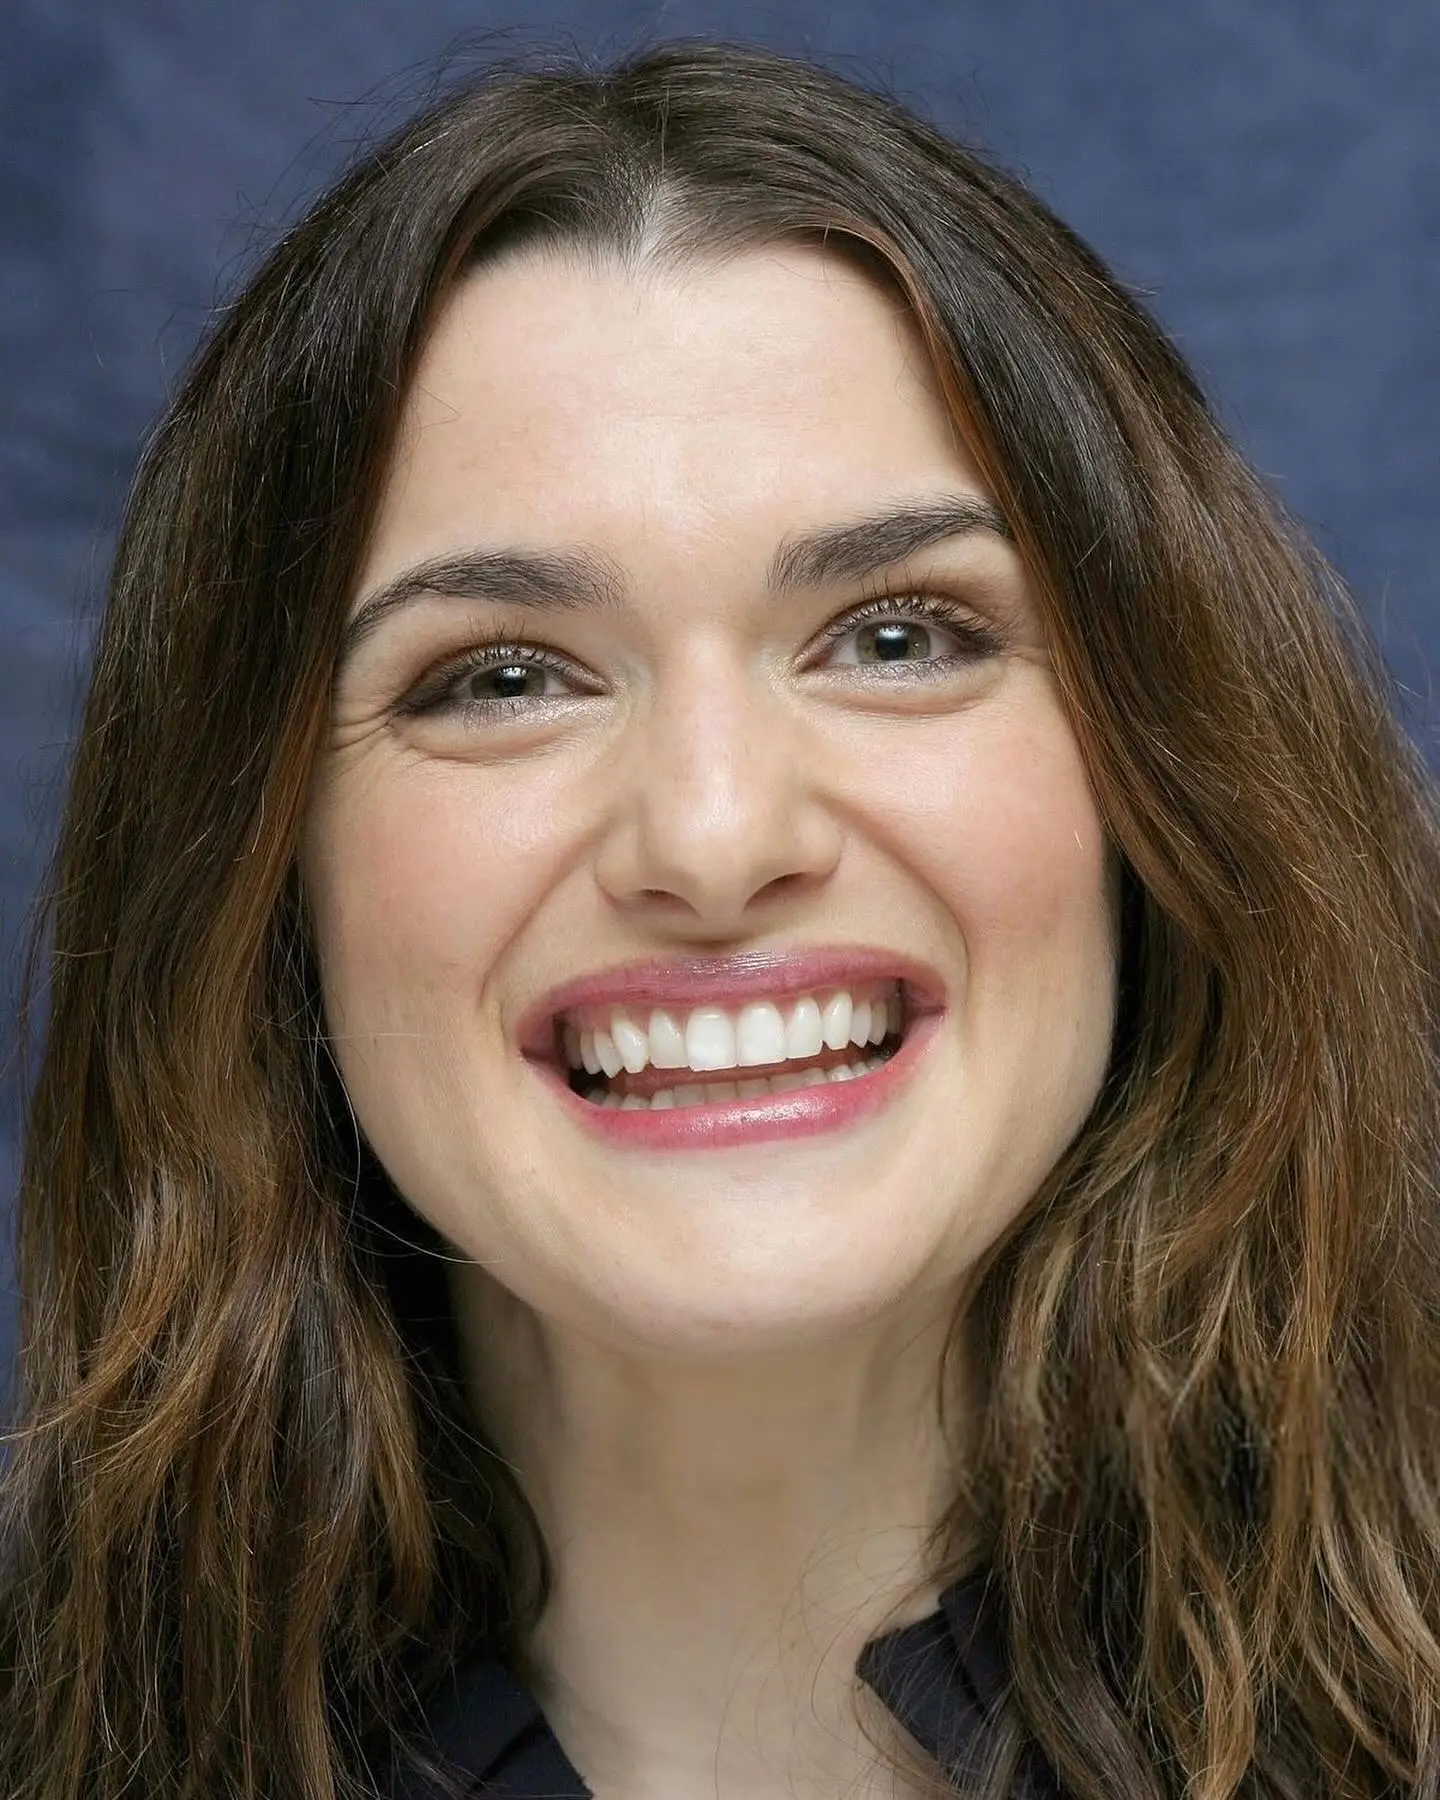 British actress Rachel Weisz Smiling Face Closeup Photos